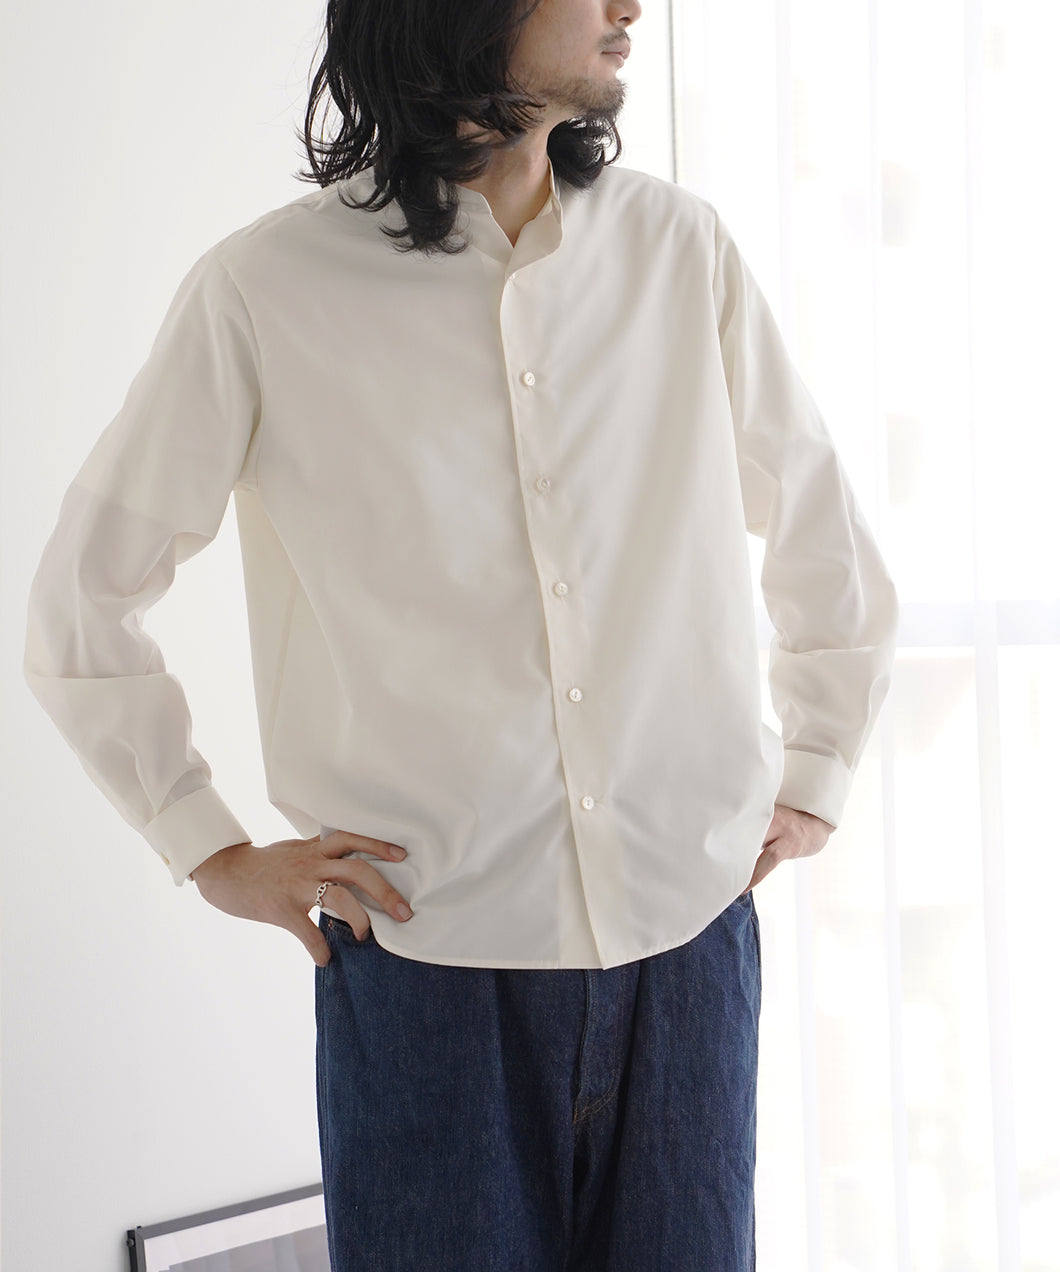 宮眞 KND-21001 kinudian オフィサーシャツ ホワイト(WH)